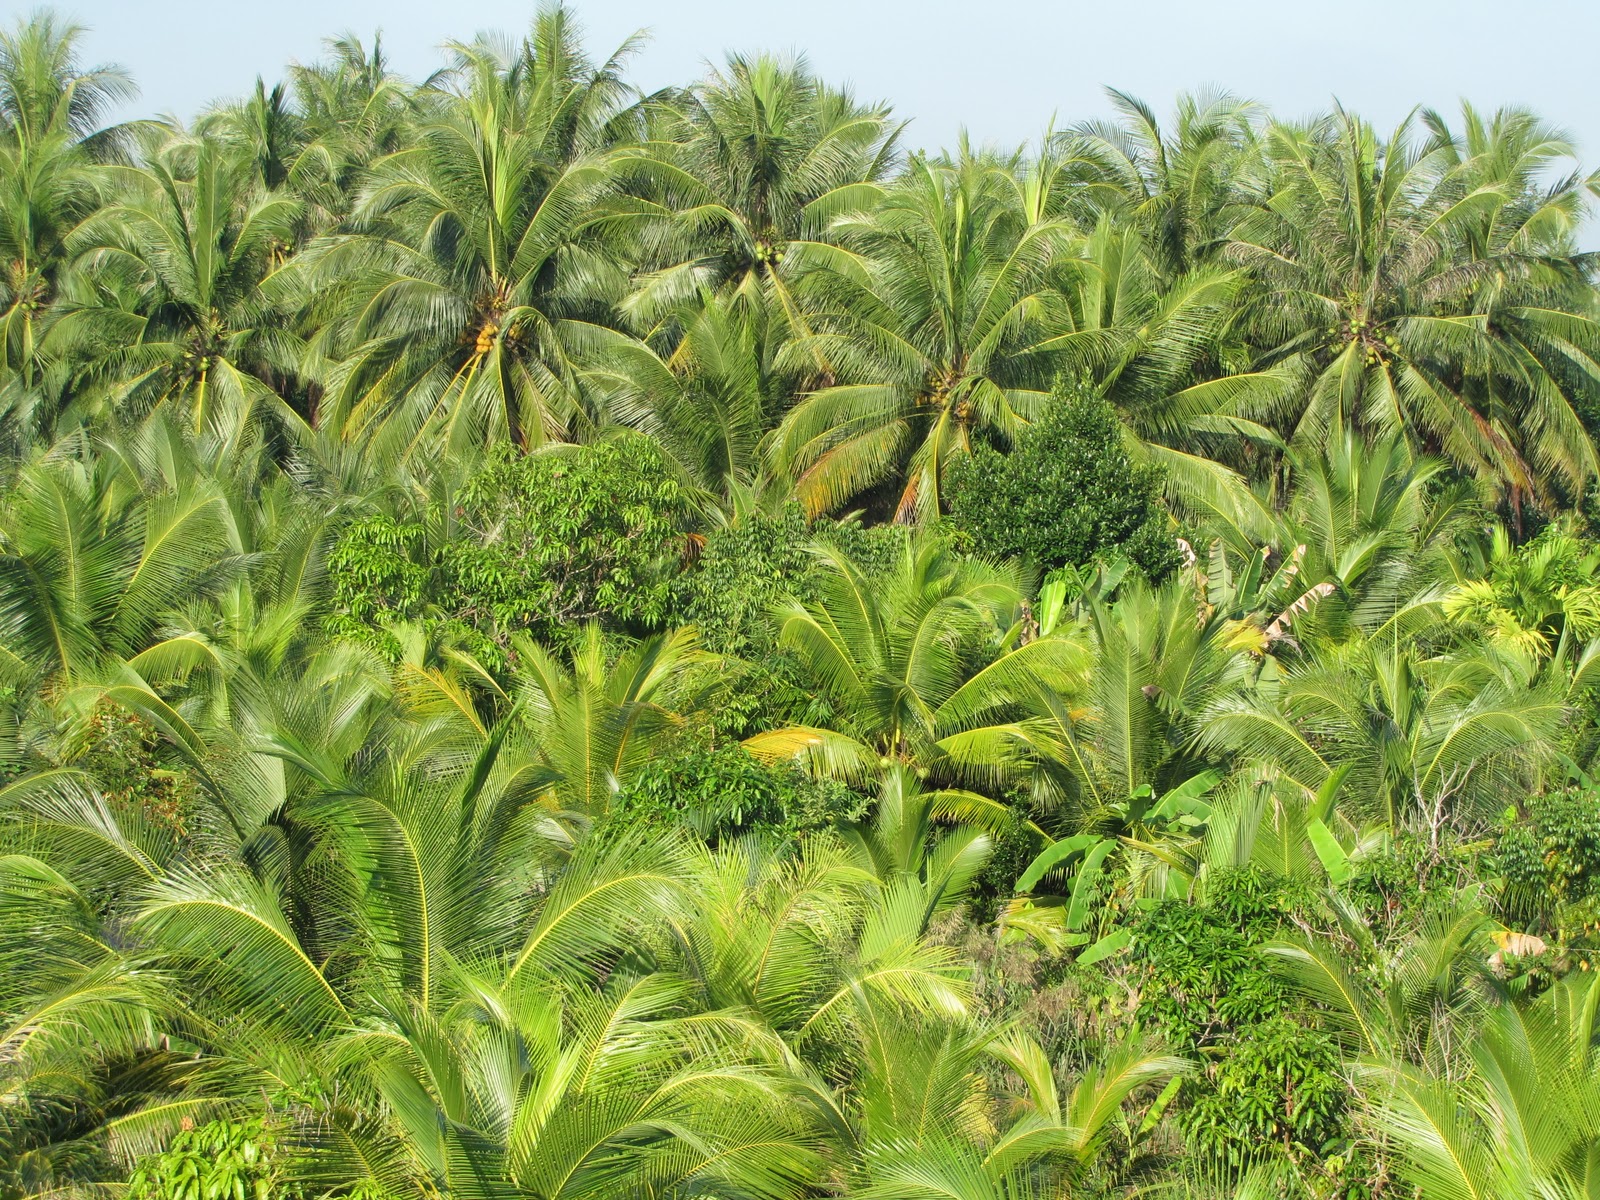 Hình ảnh rừng dừa nhìn từ trên cao